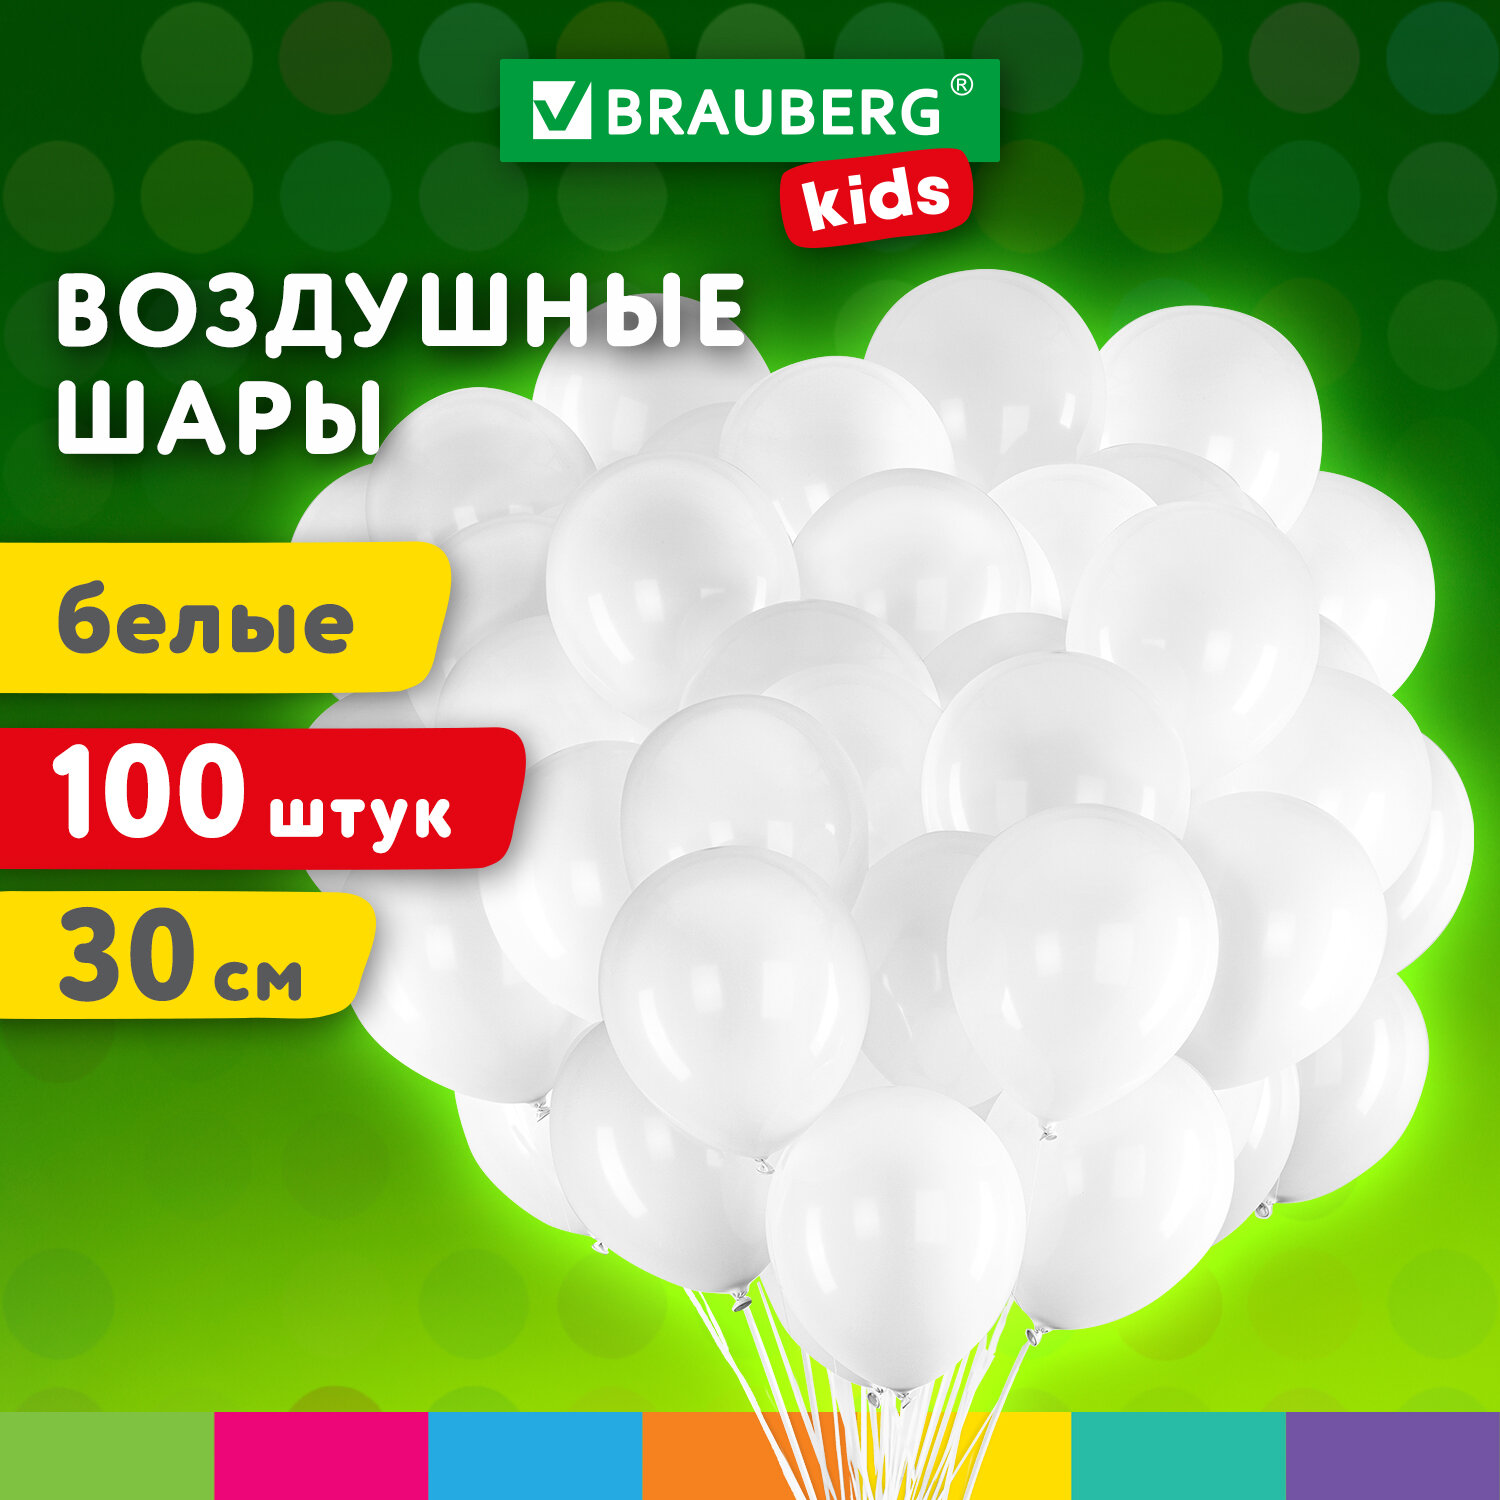 Шарики воздушные Brauberg Kids 591875 набор на день рождения, для фотозоны, 30 см, 100 шт воздушные шары для фотозоны